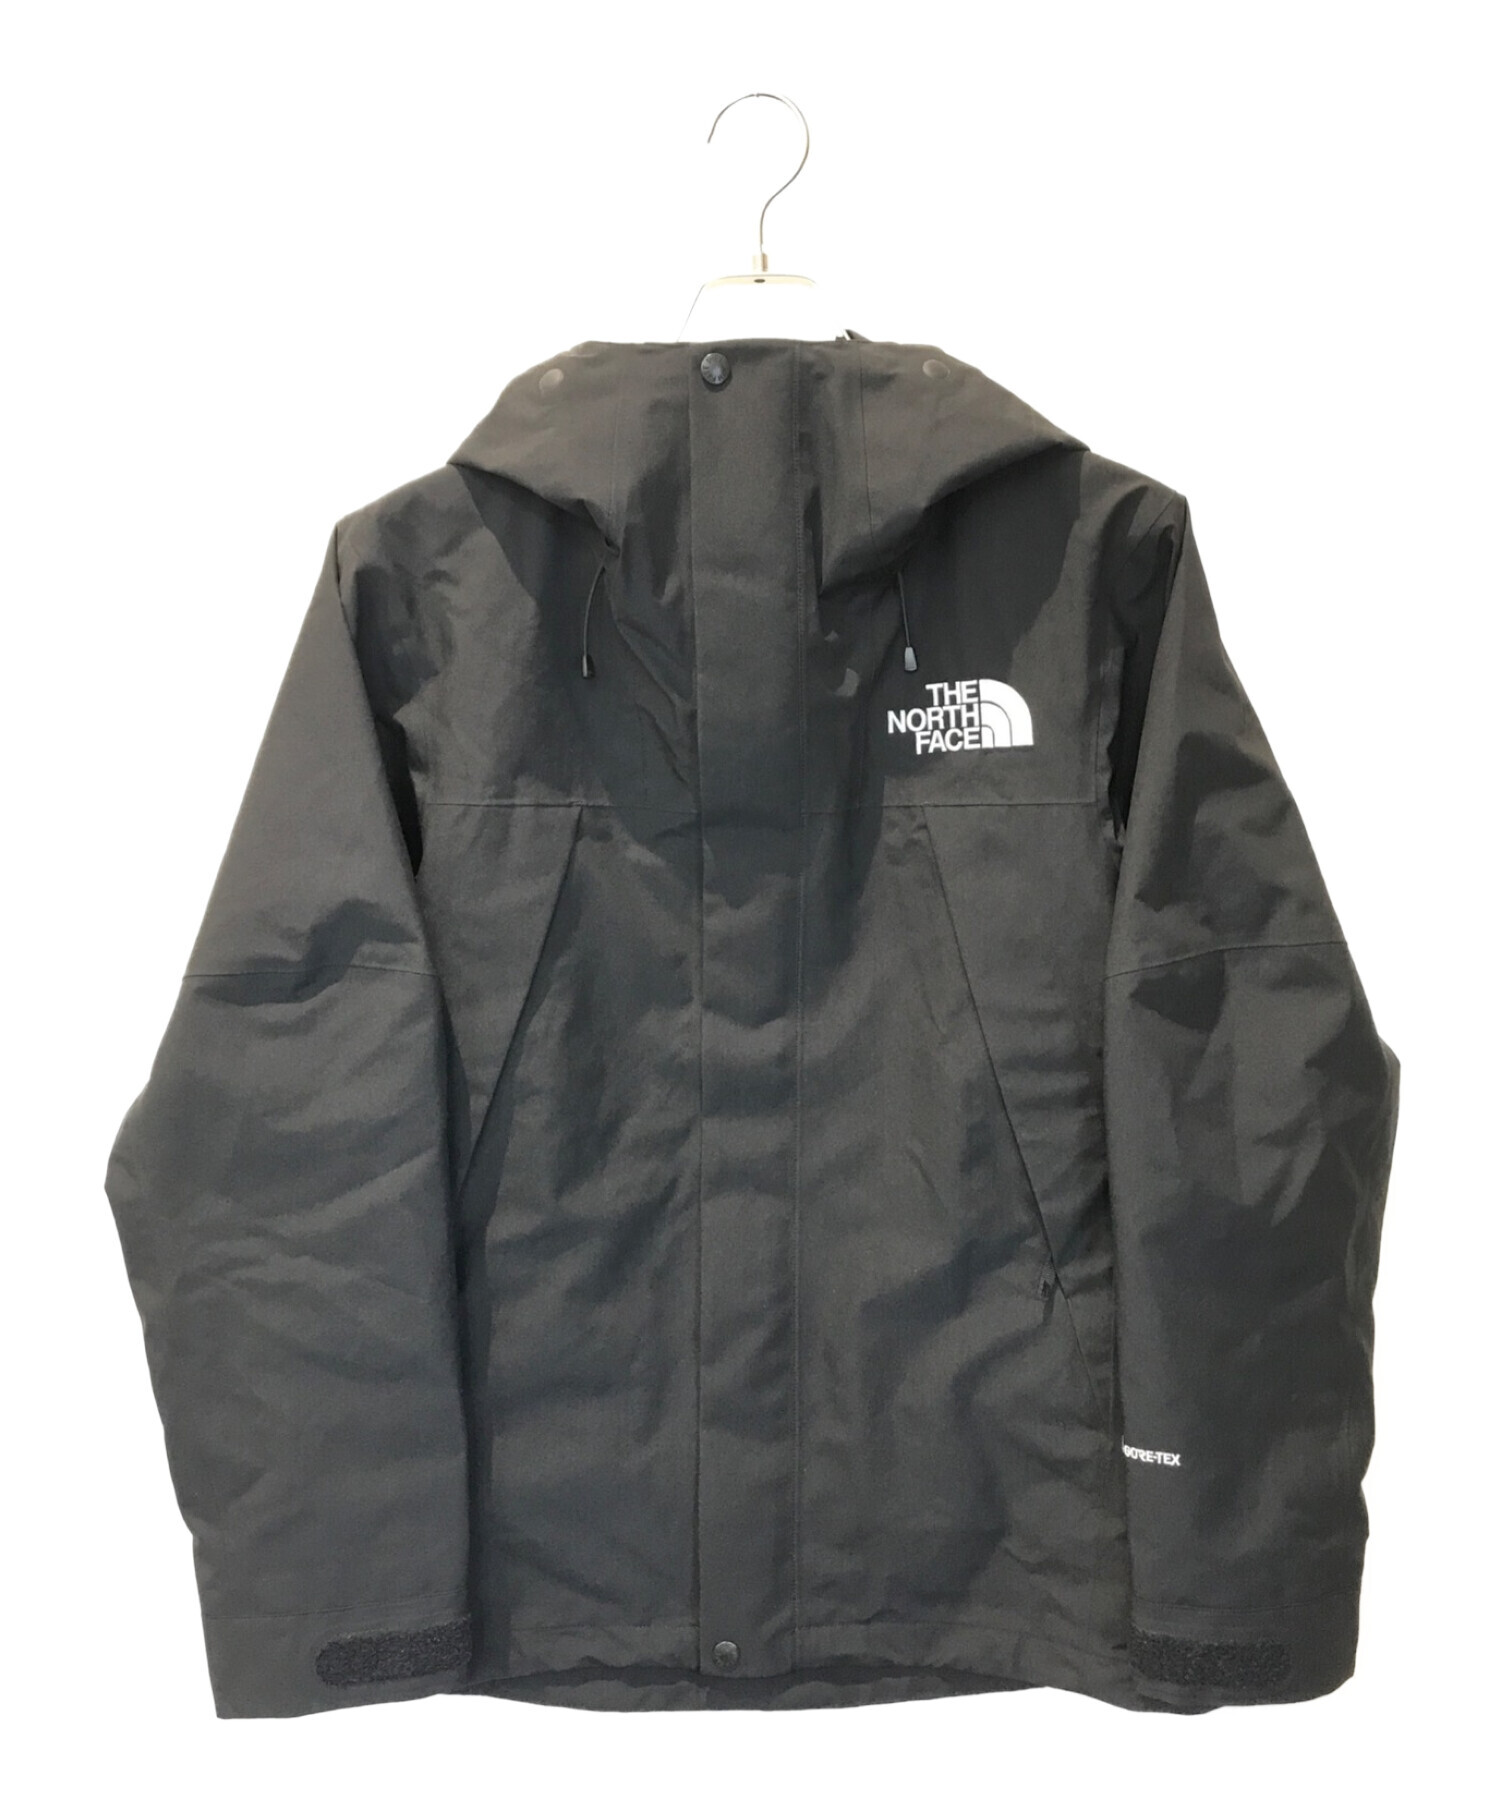 マウンテンパーカーThe north face mountain jacket Sサイズ